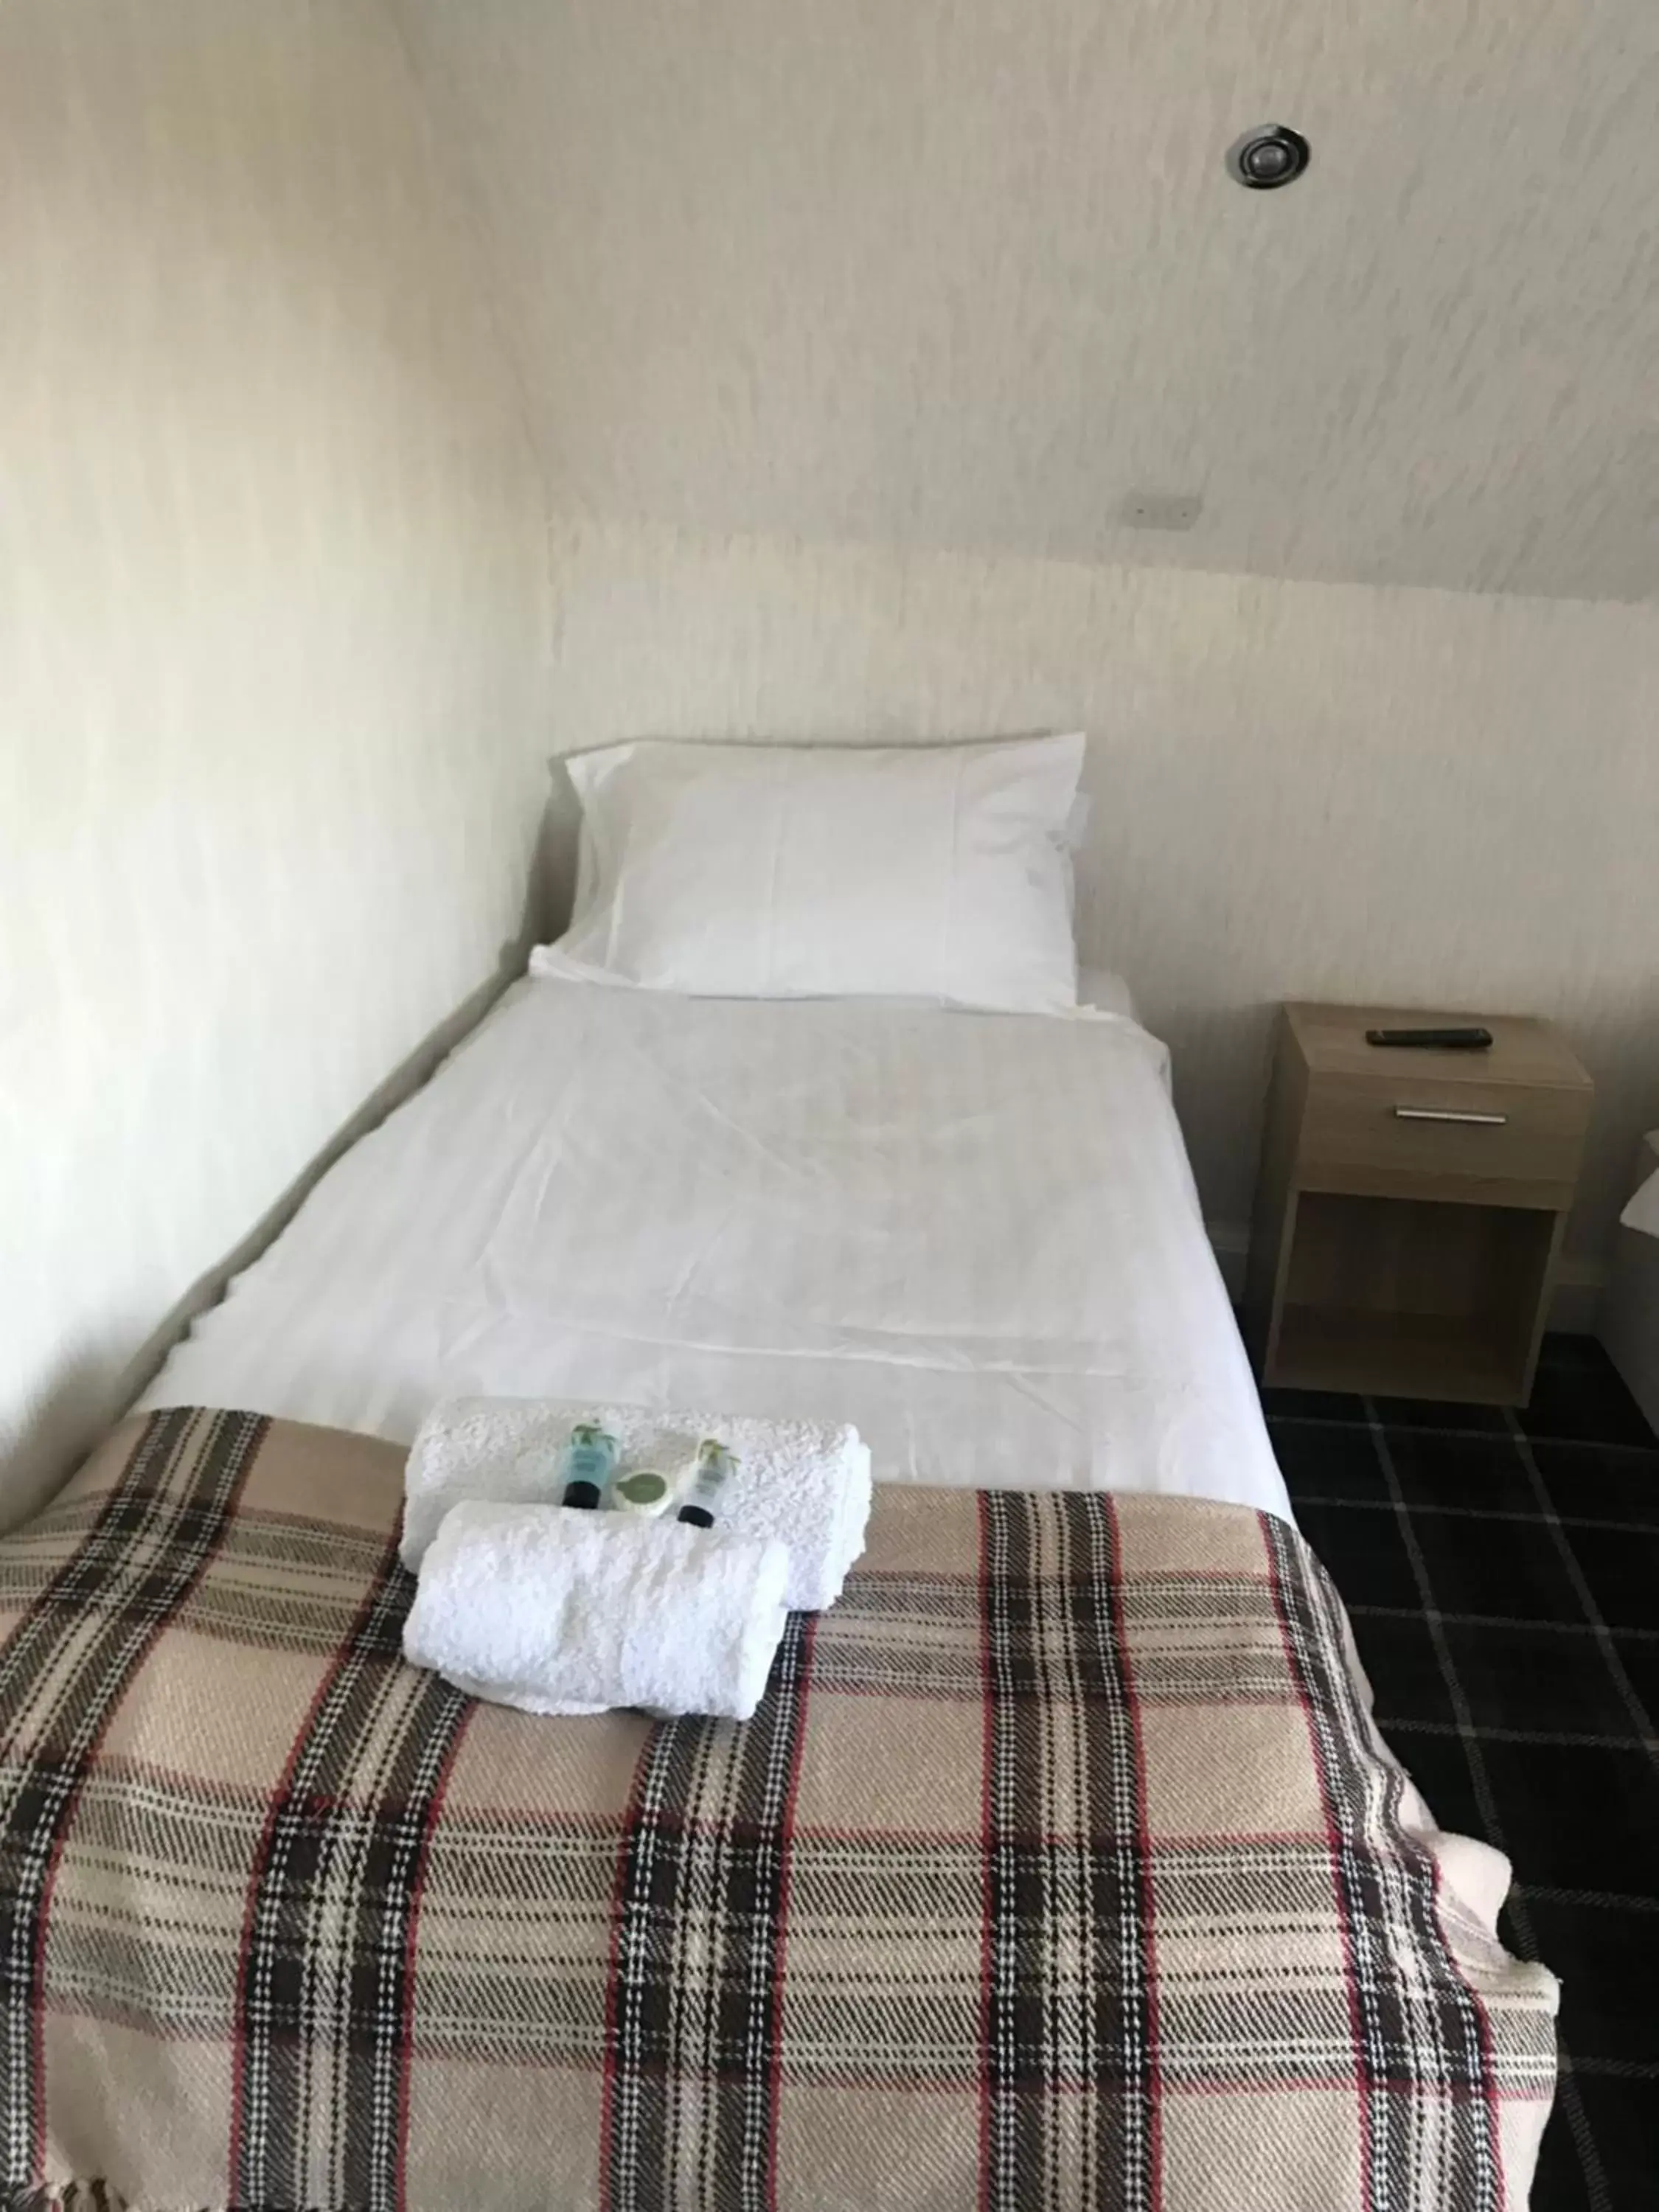 Bed in Gothenburg Hotel